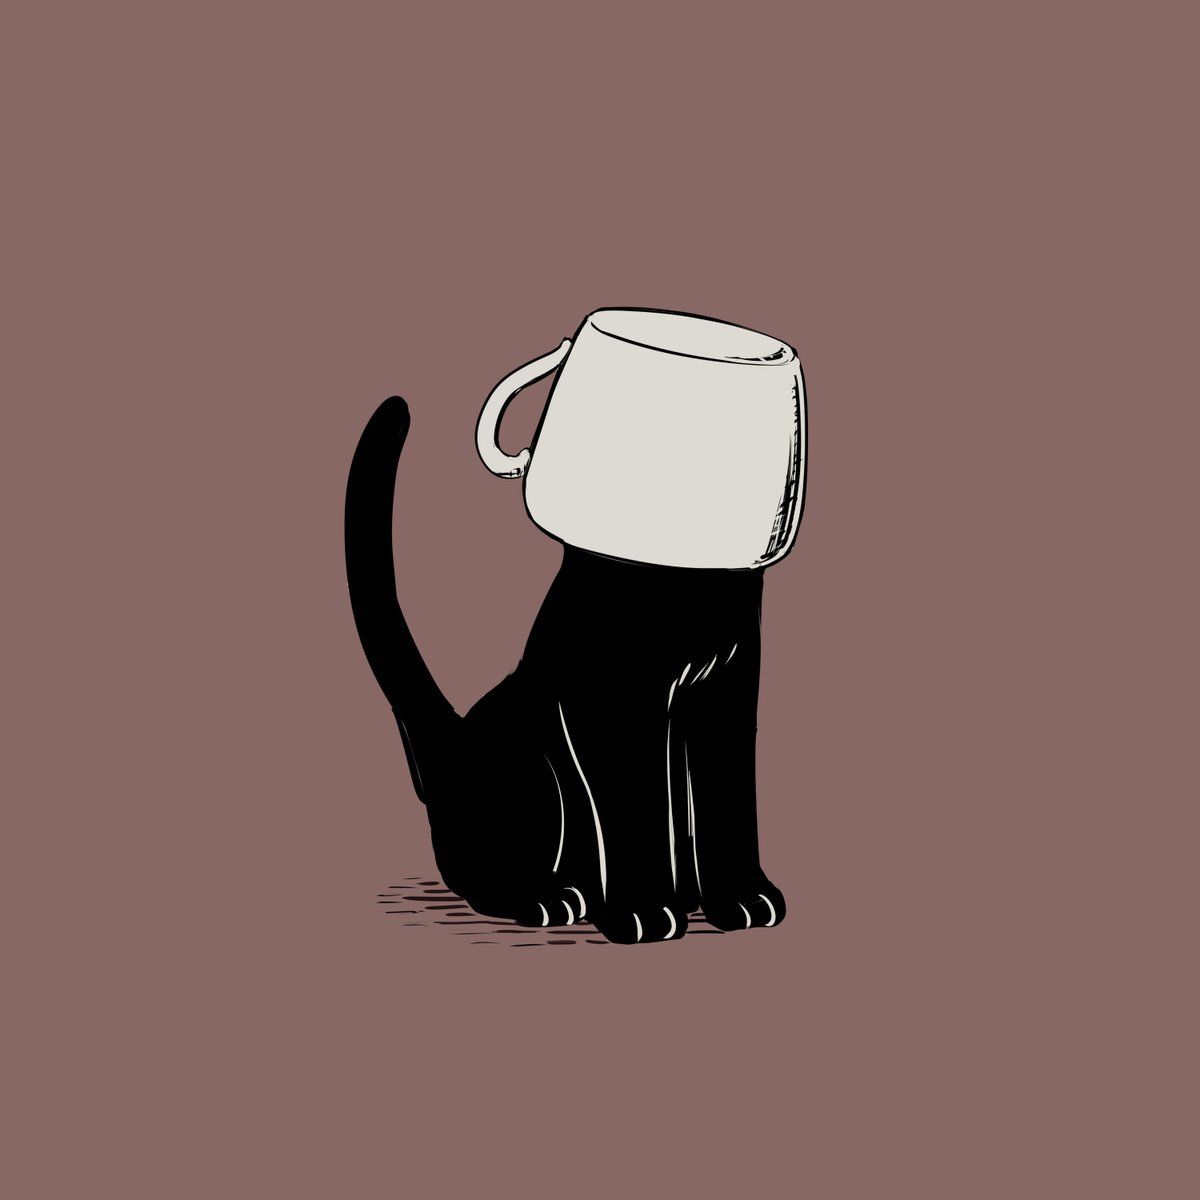 アボガド6 on Twitter. Black cat art, Cat art, Cat aesthetic